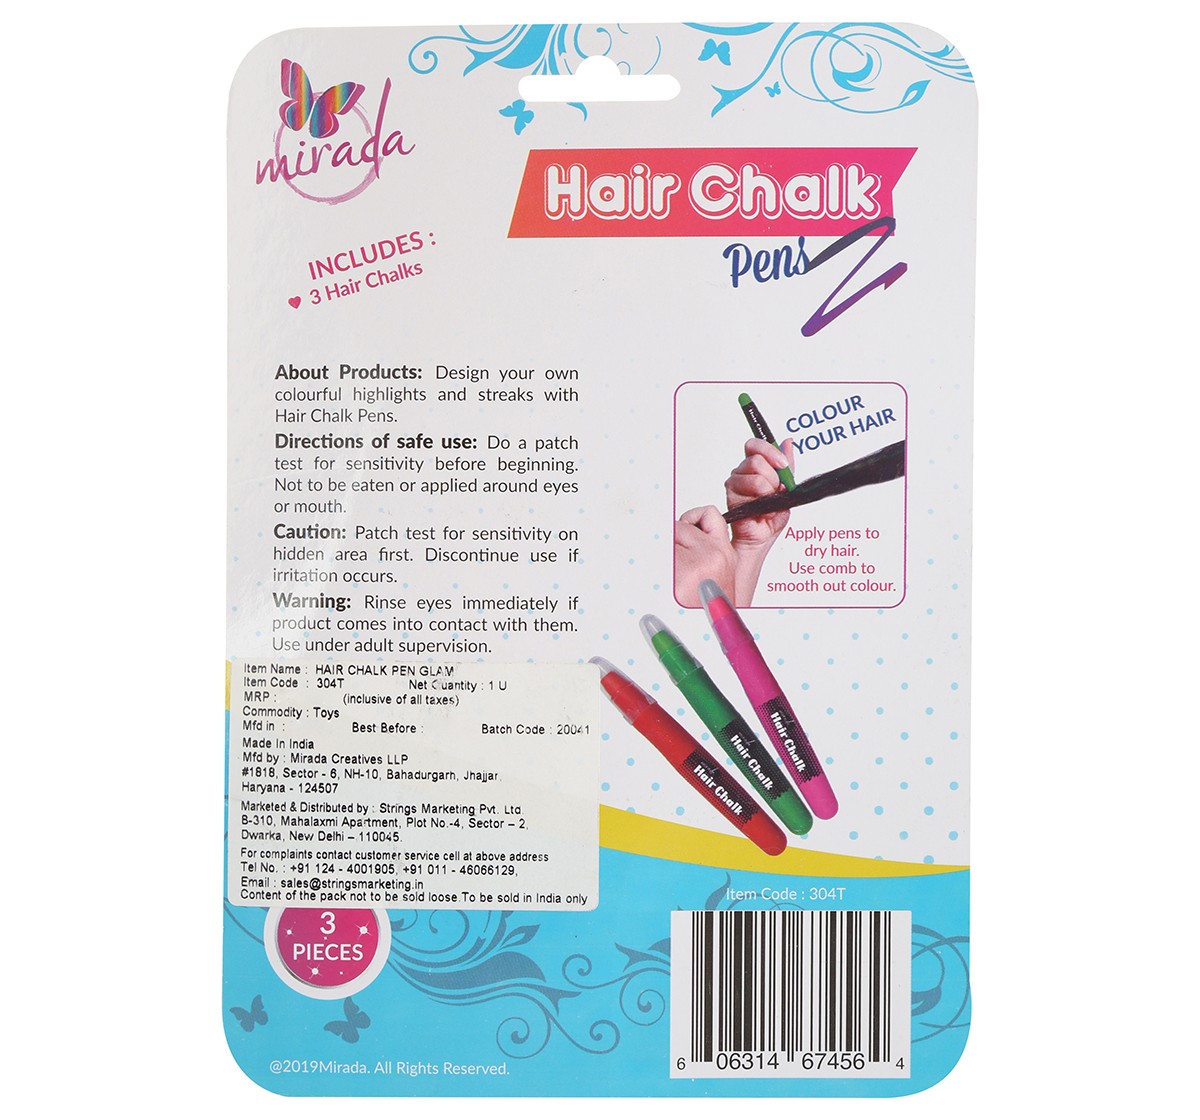 Mirada Hair chalk pen glam Multicolor 6Y+